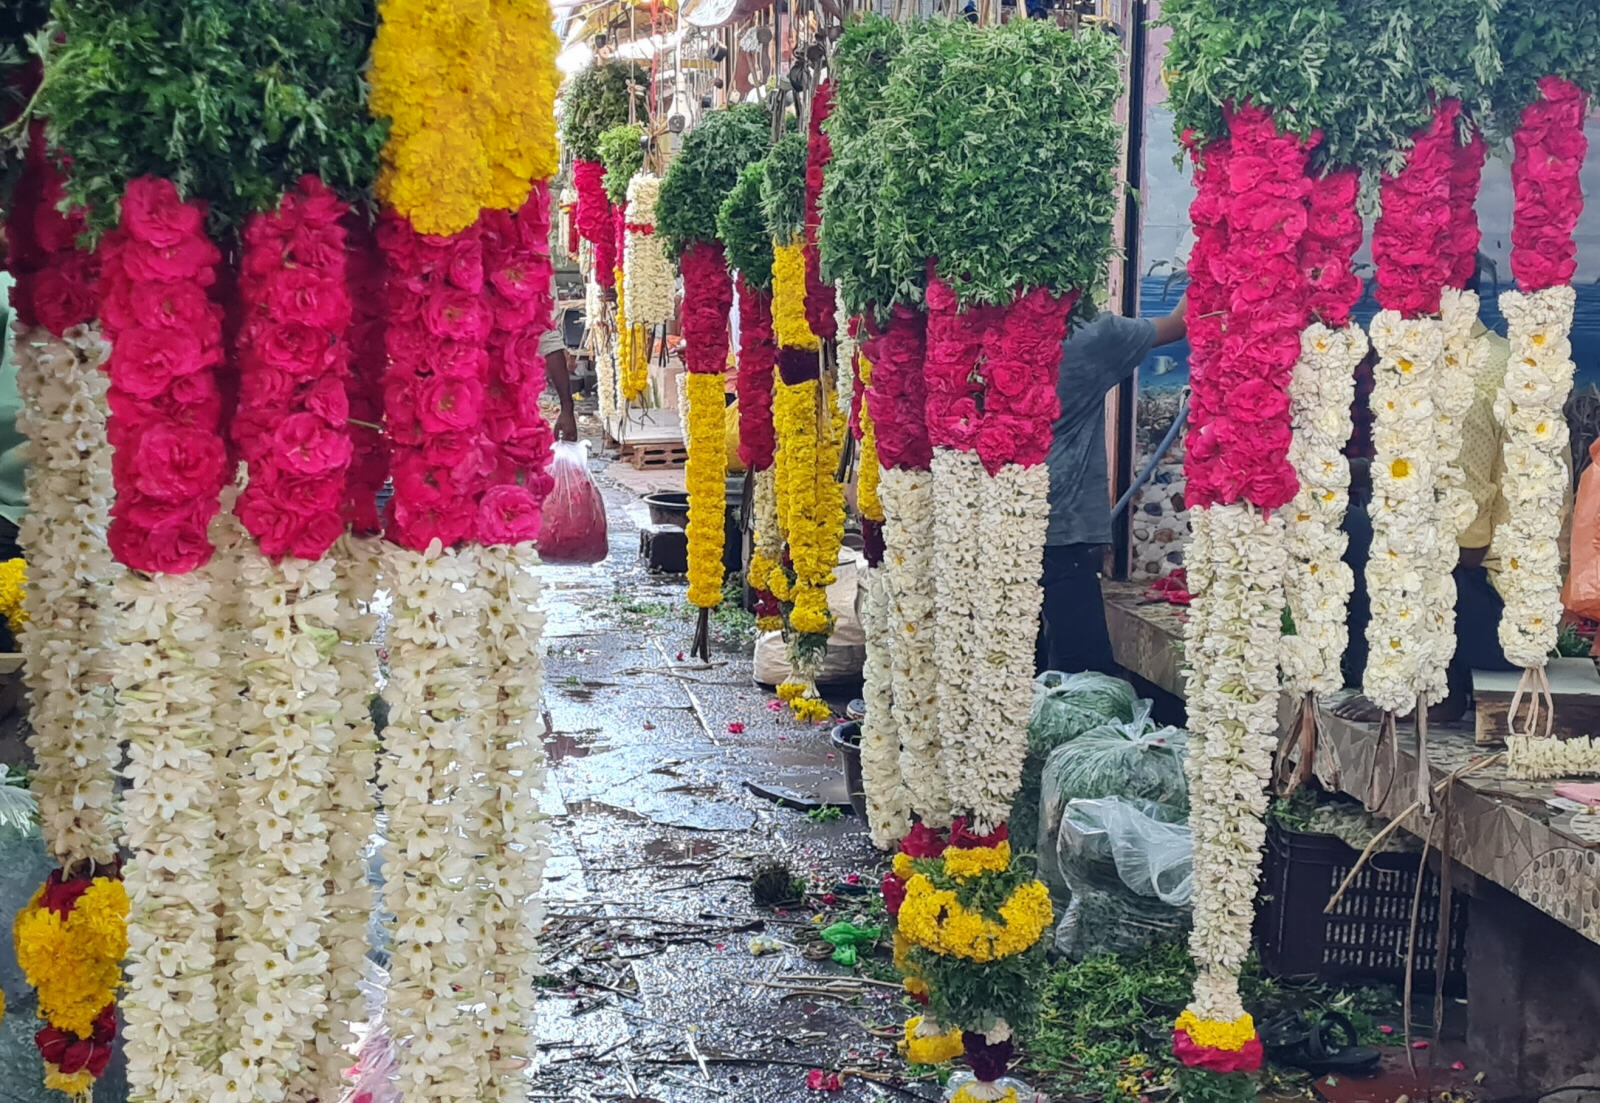 Garlands in the market in Pondicherry, India